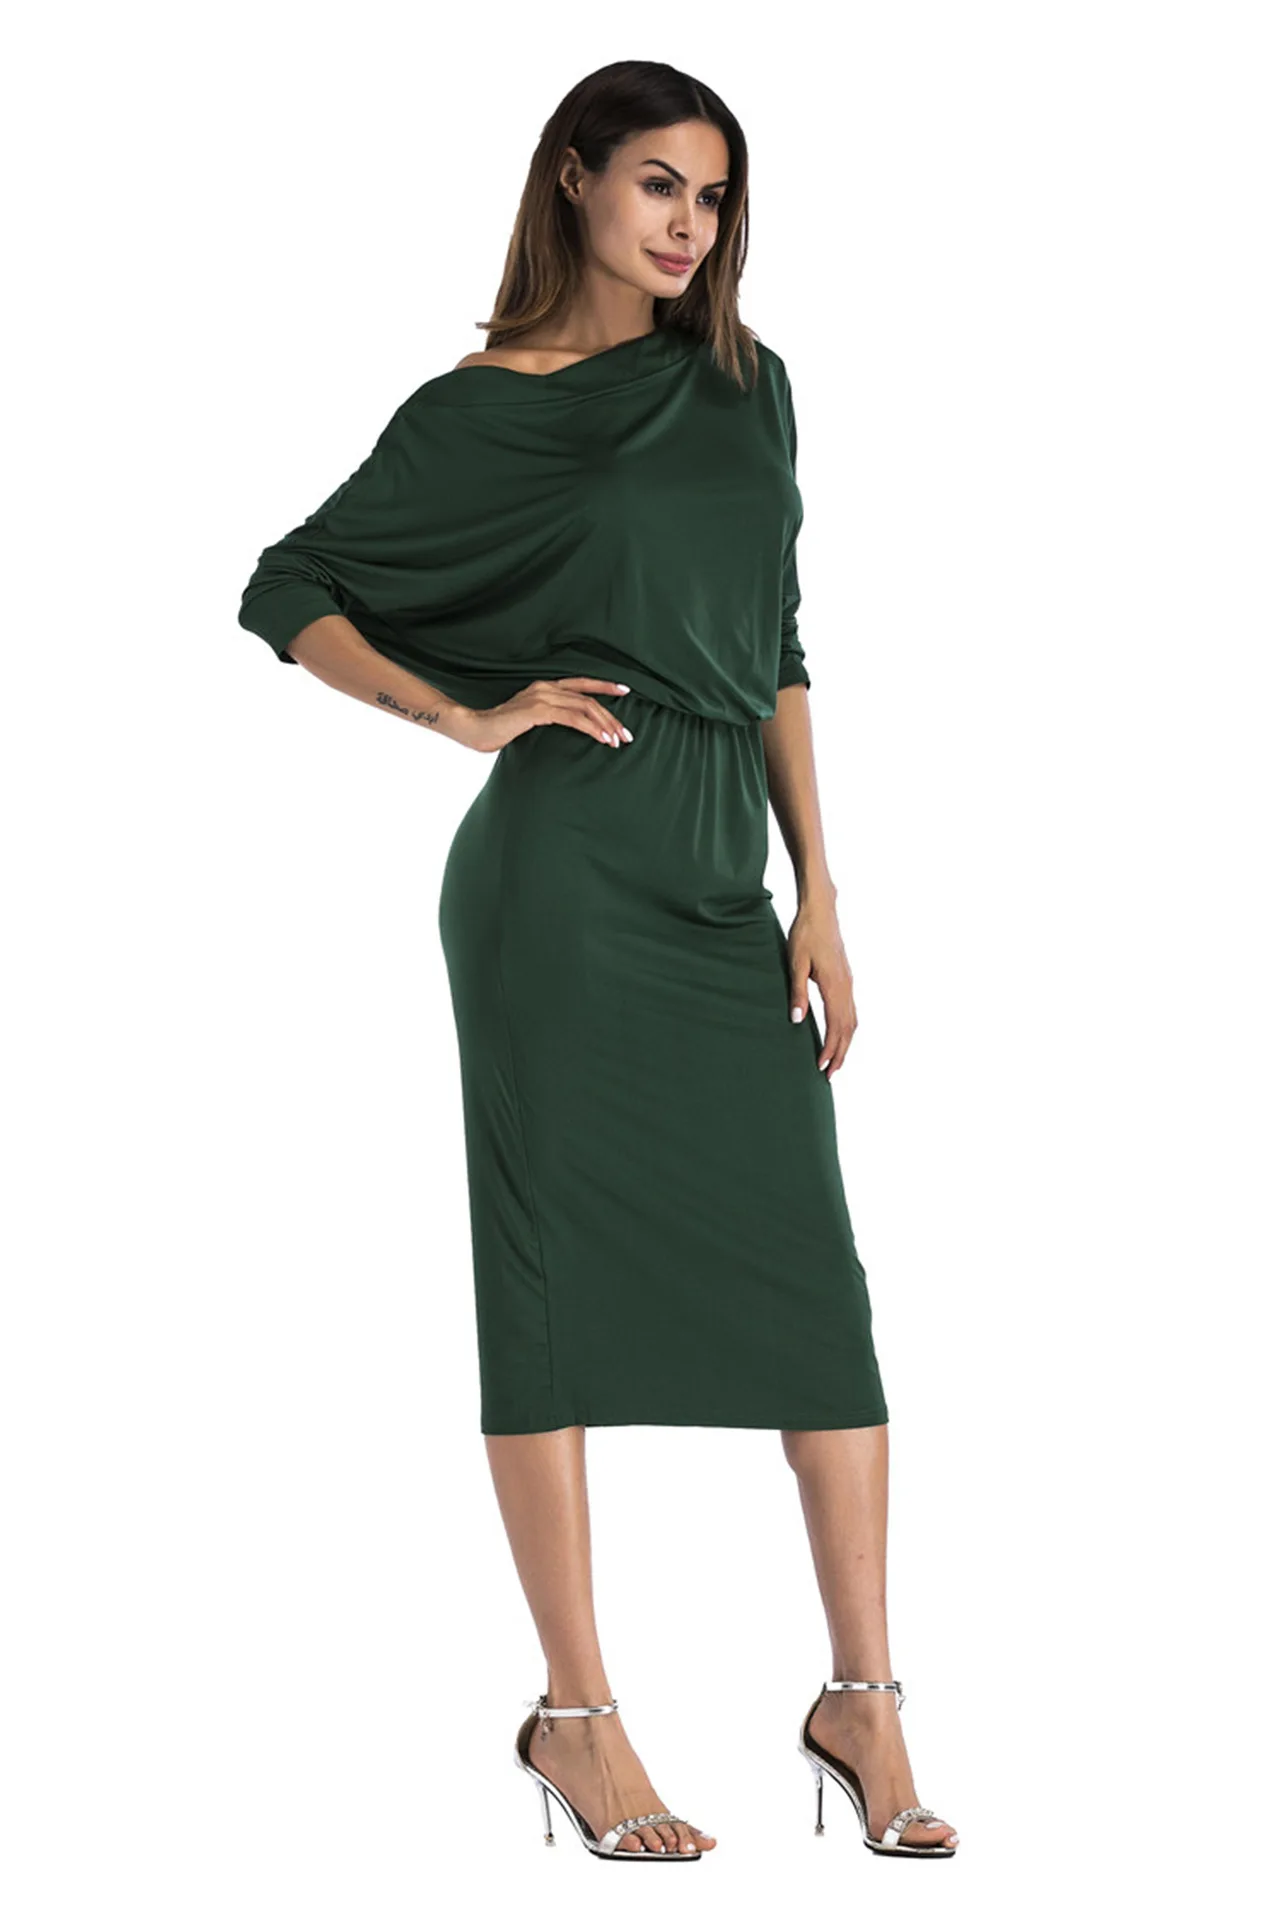 Женское платье, сексуальное, средней длины, с открытыми плечами, армейское зеленое, с вырезом лодочкой, платье размера плюс, элегантное, облегающее, вечерние платья, vestidos mujer